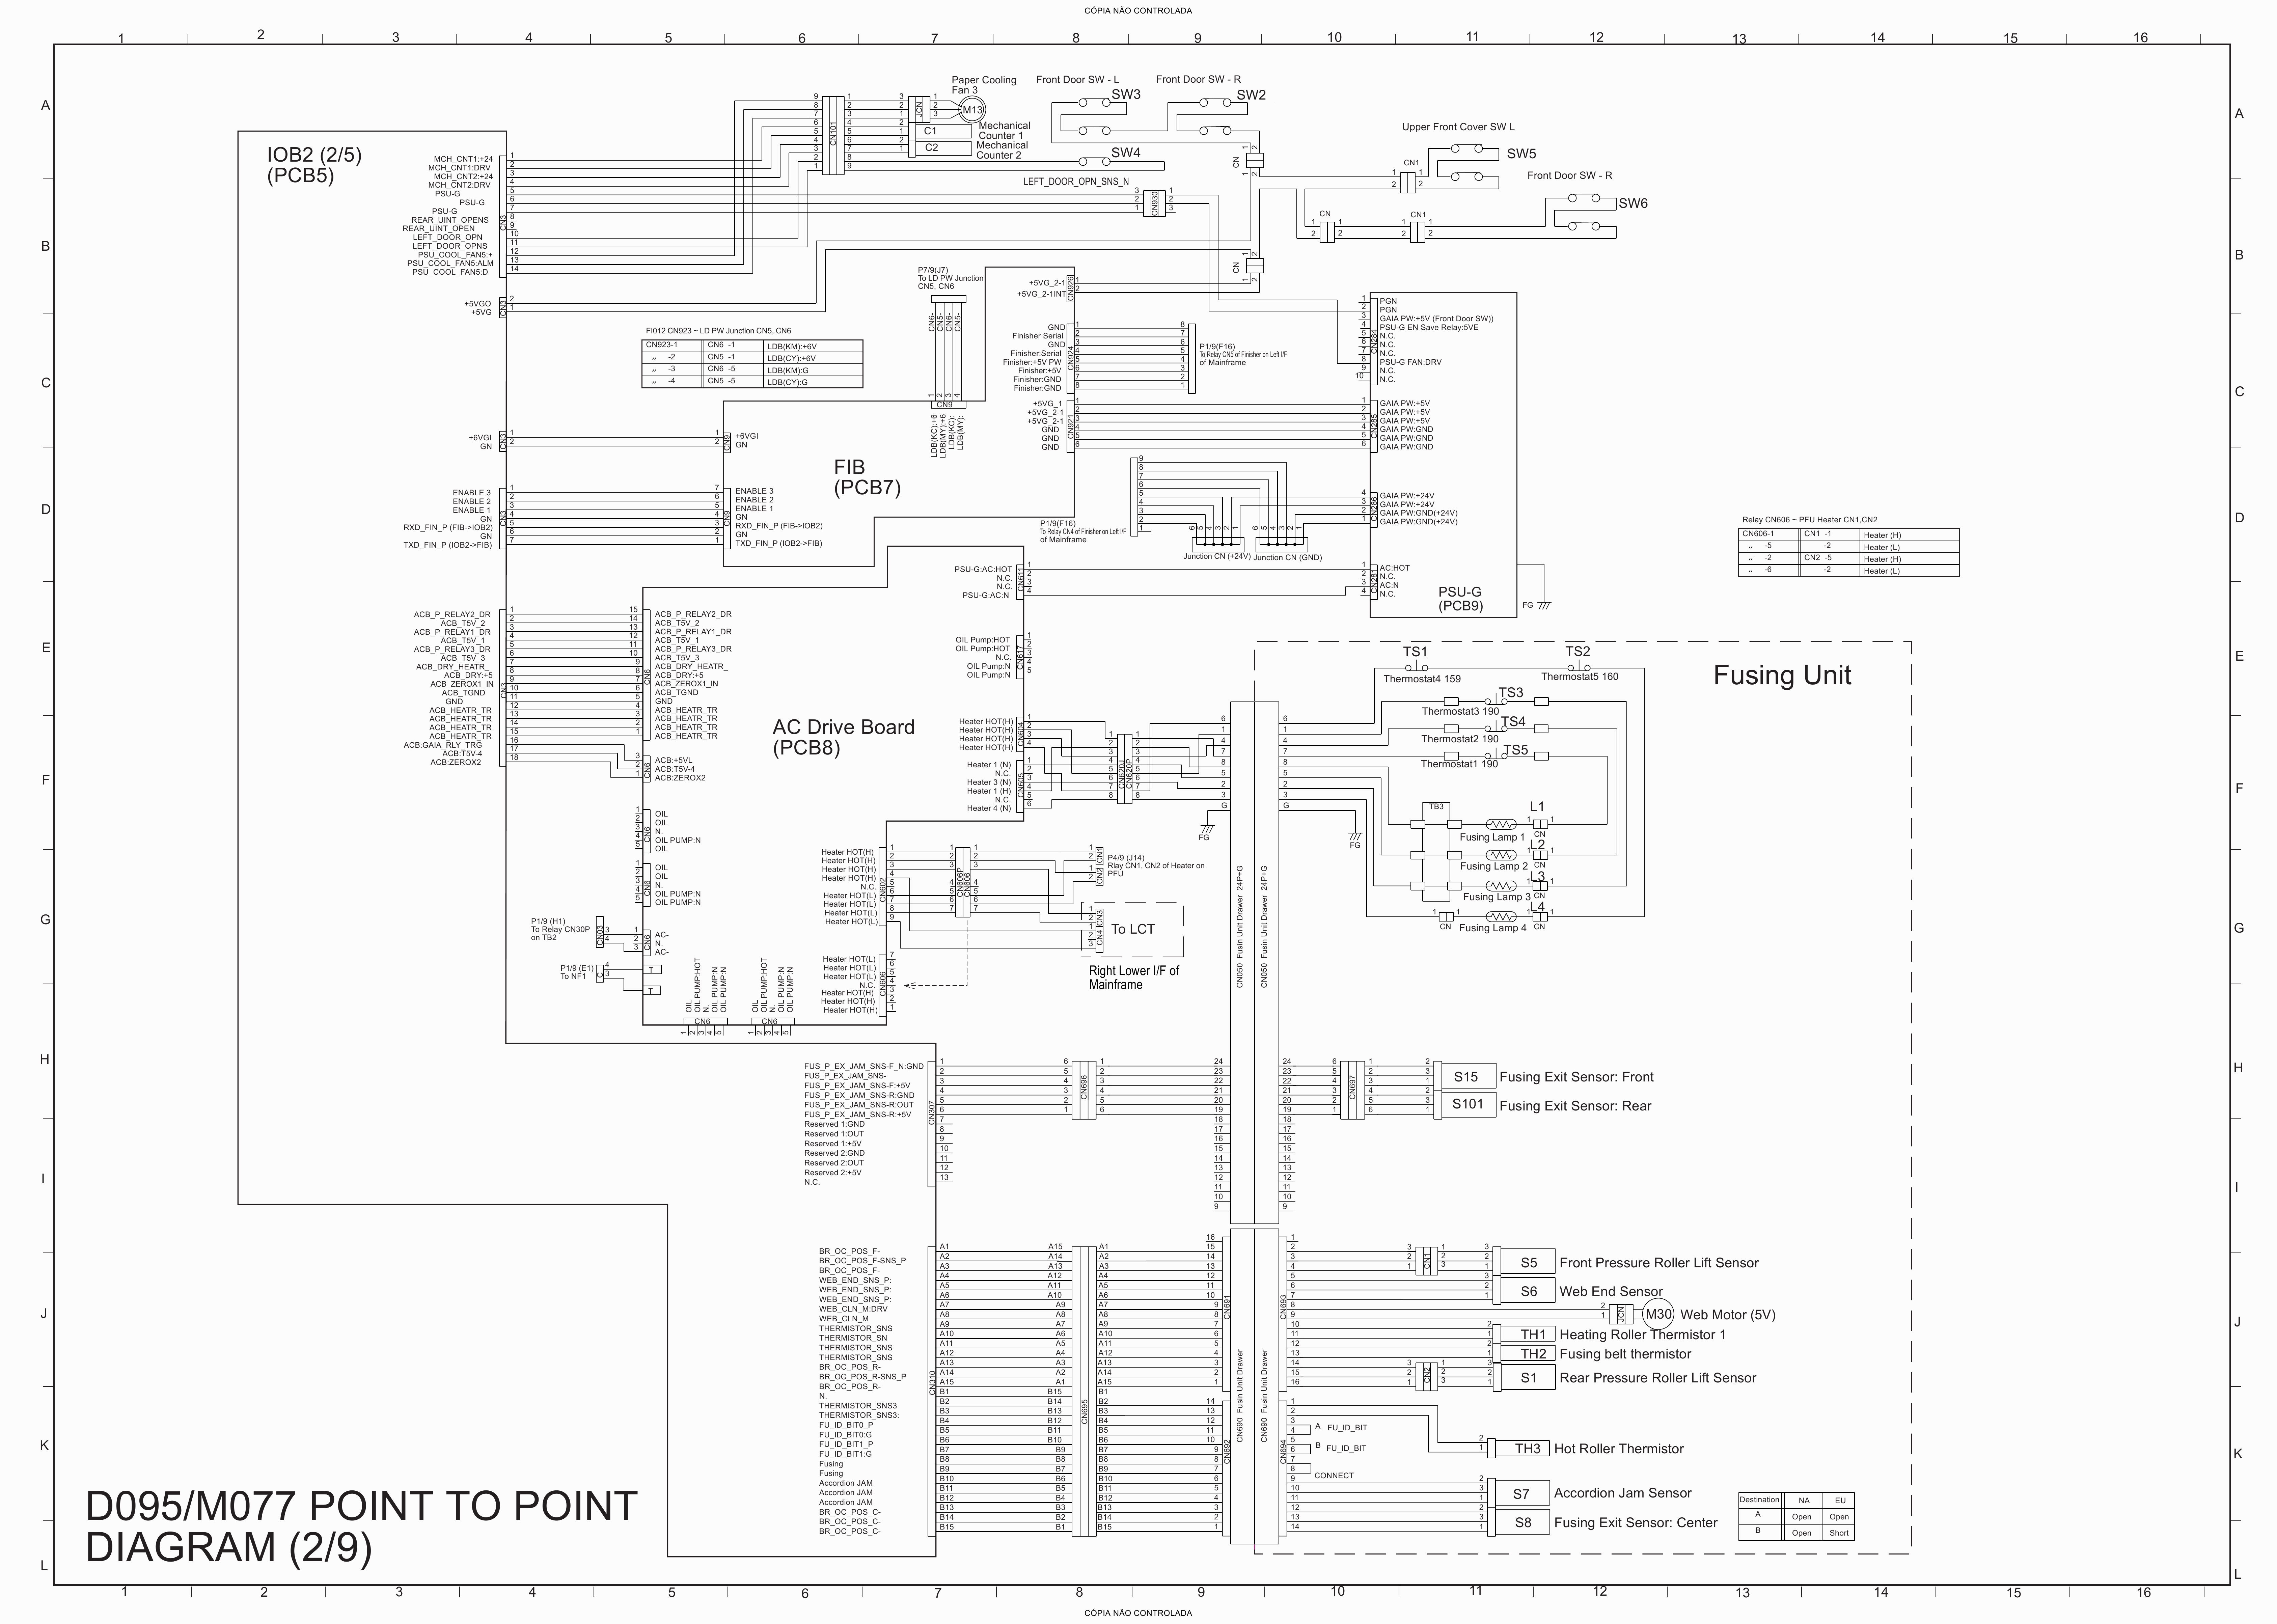 RICOH Aficio Pro-C901s C901 D095 M077 Circuit Diagram-2